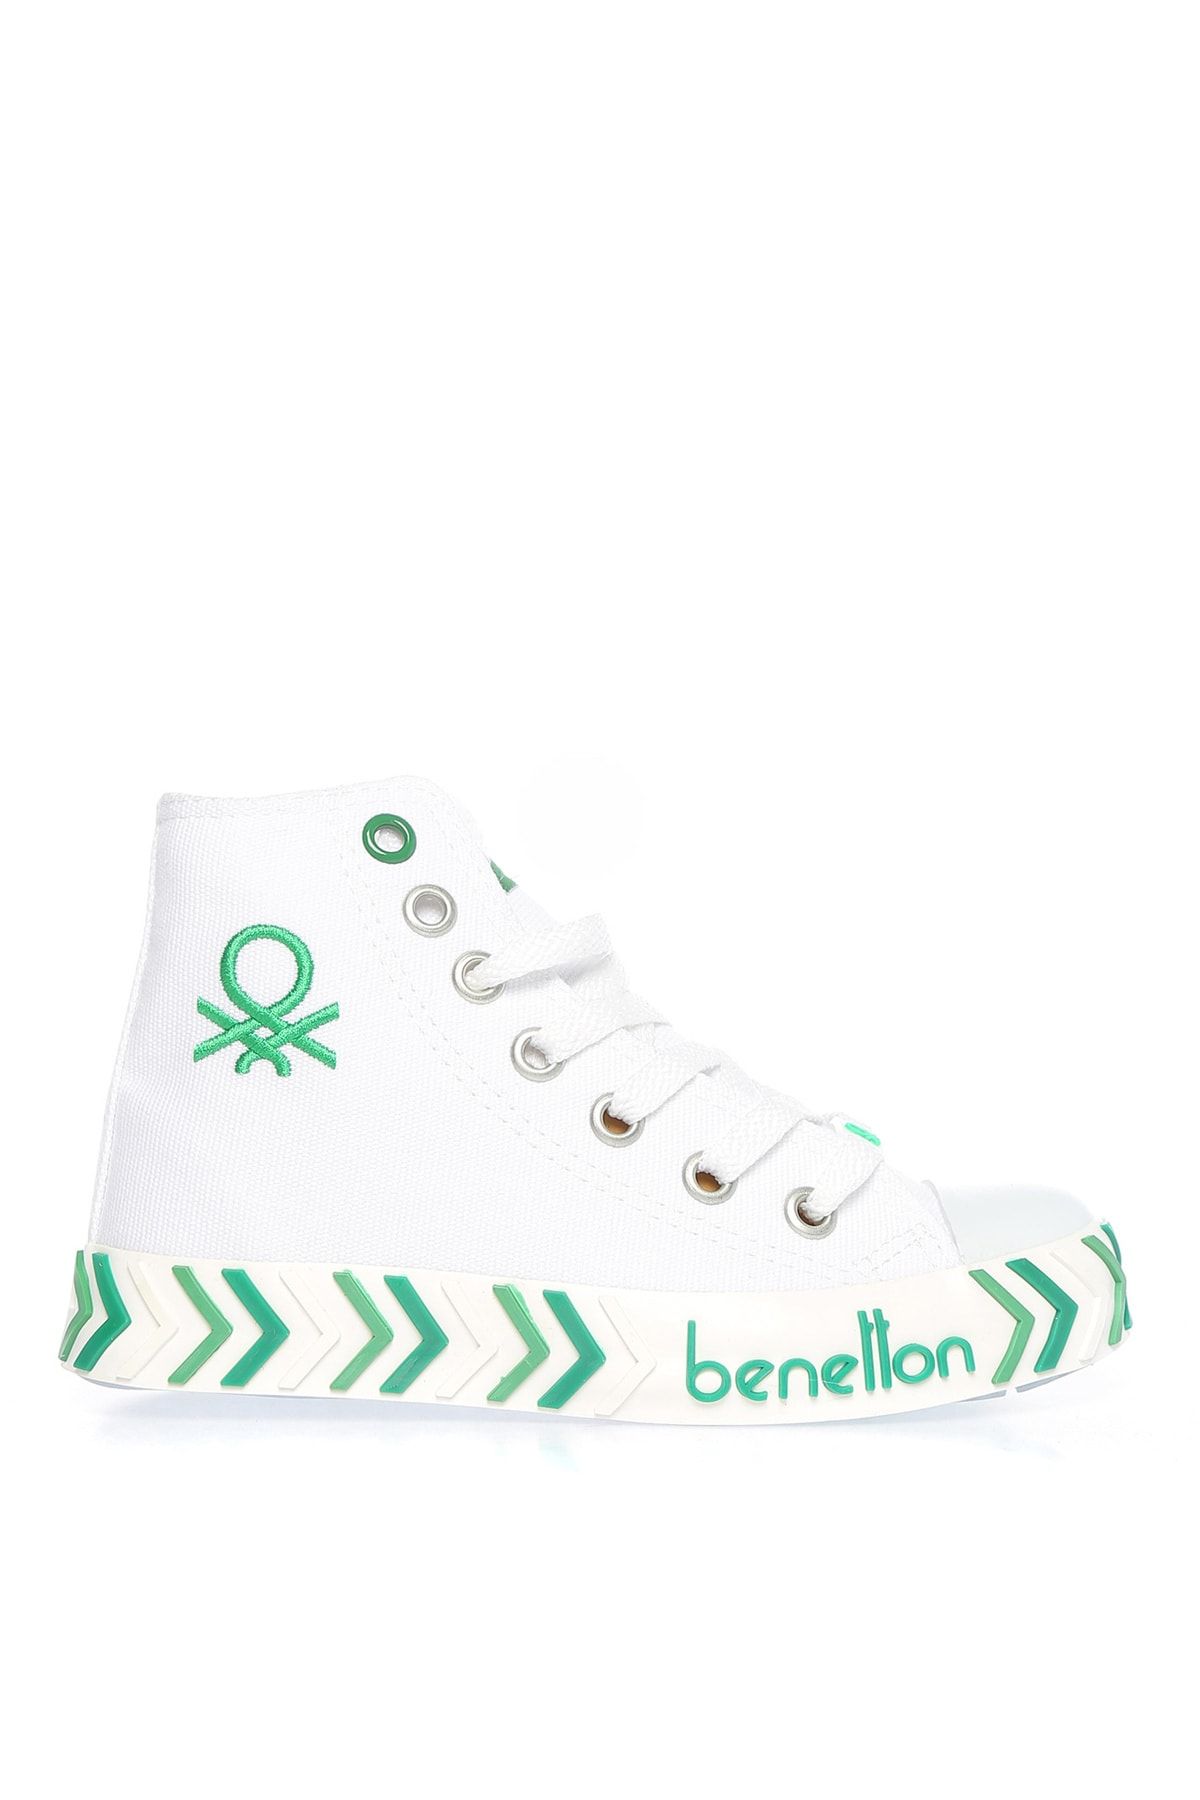 Benetton Beyaz Erkek Çocuk Yürüyüş Ayakkabısı BN-30636 19-Beyaz